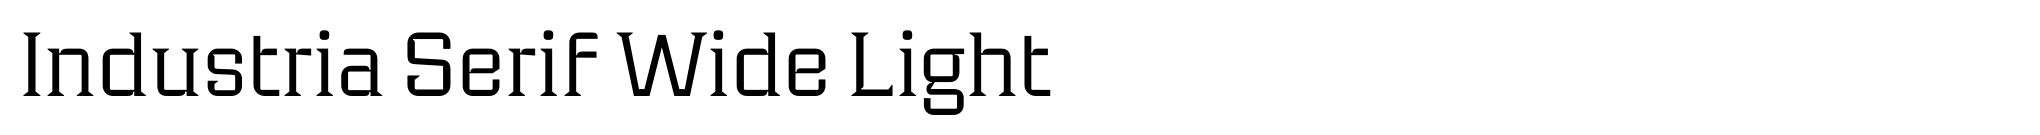 Industria Serif Wide Light image